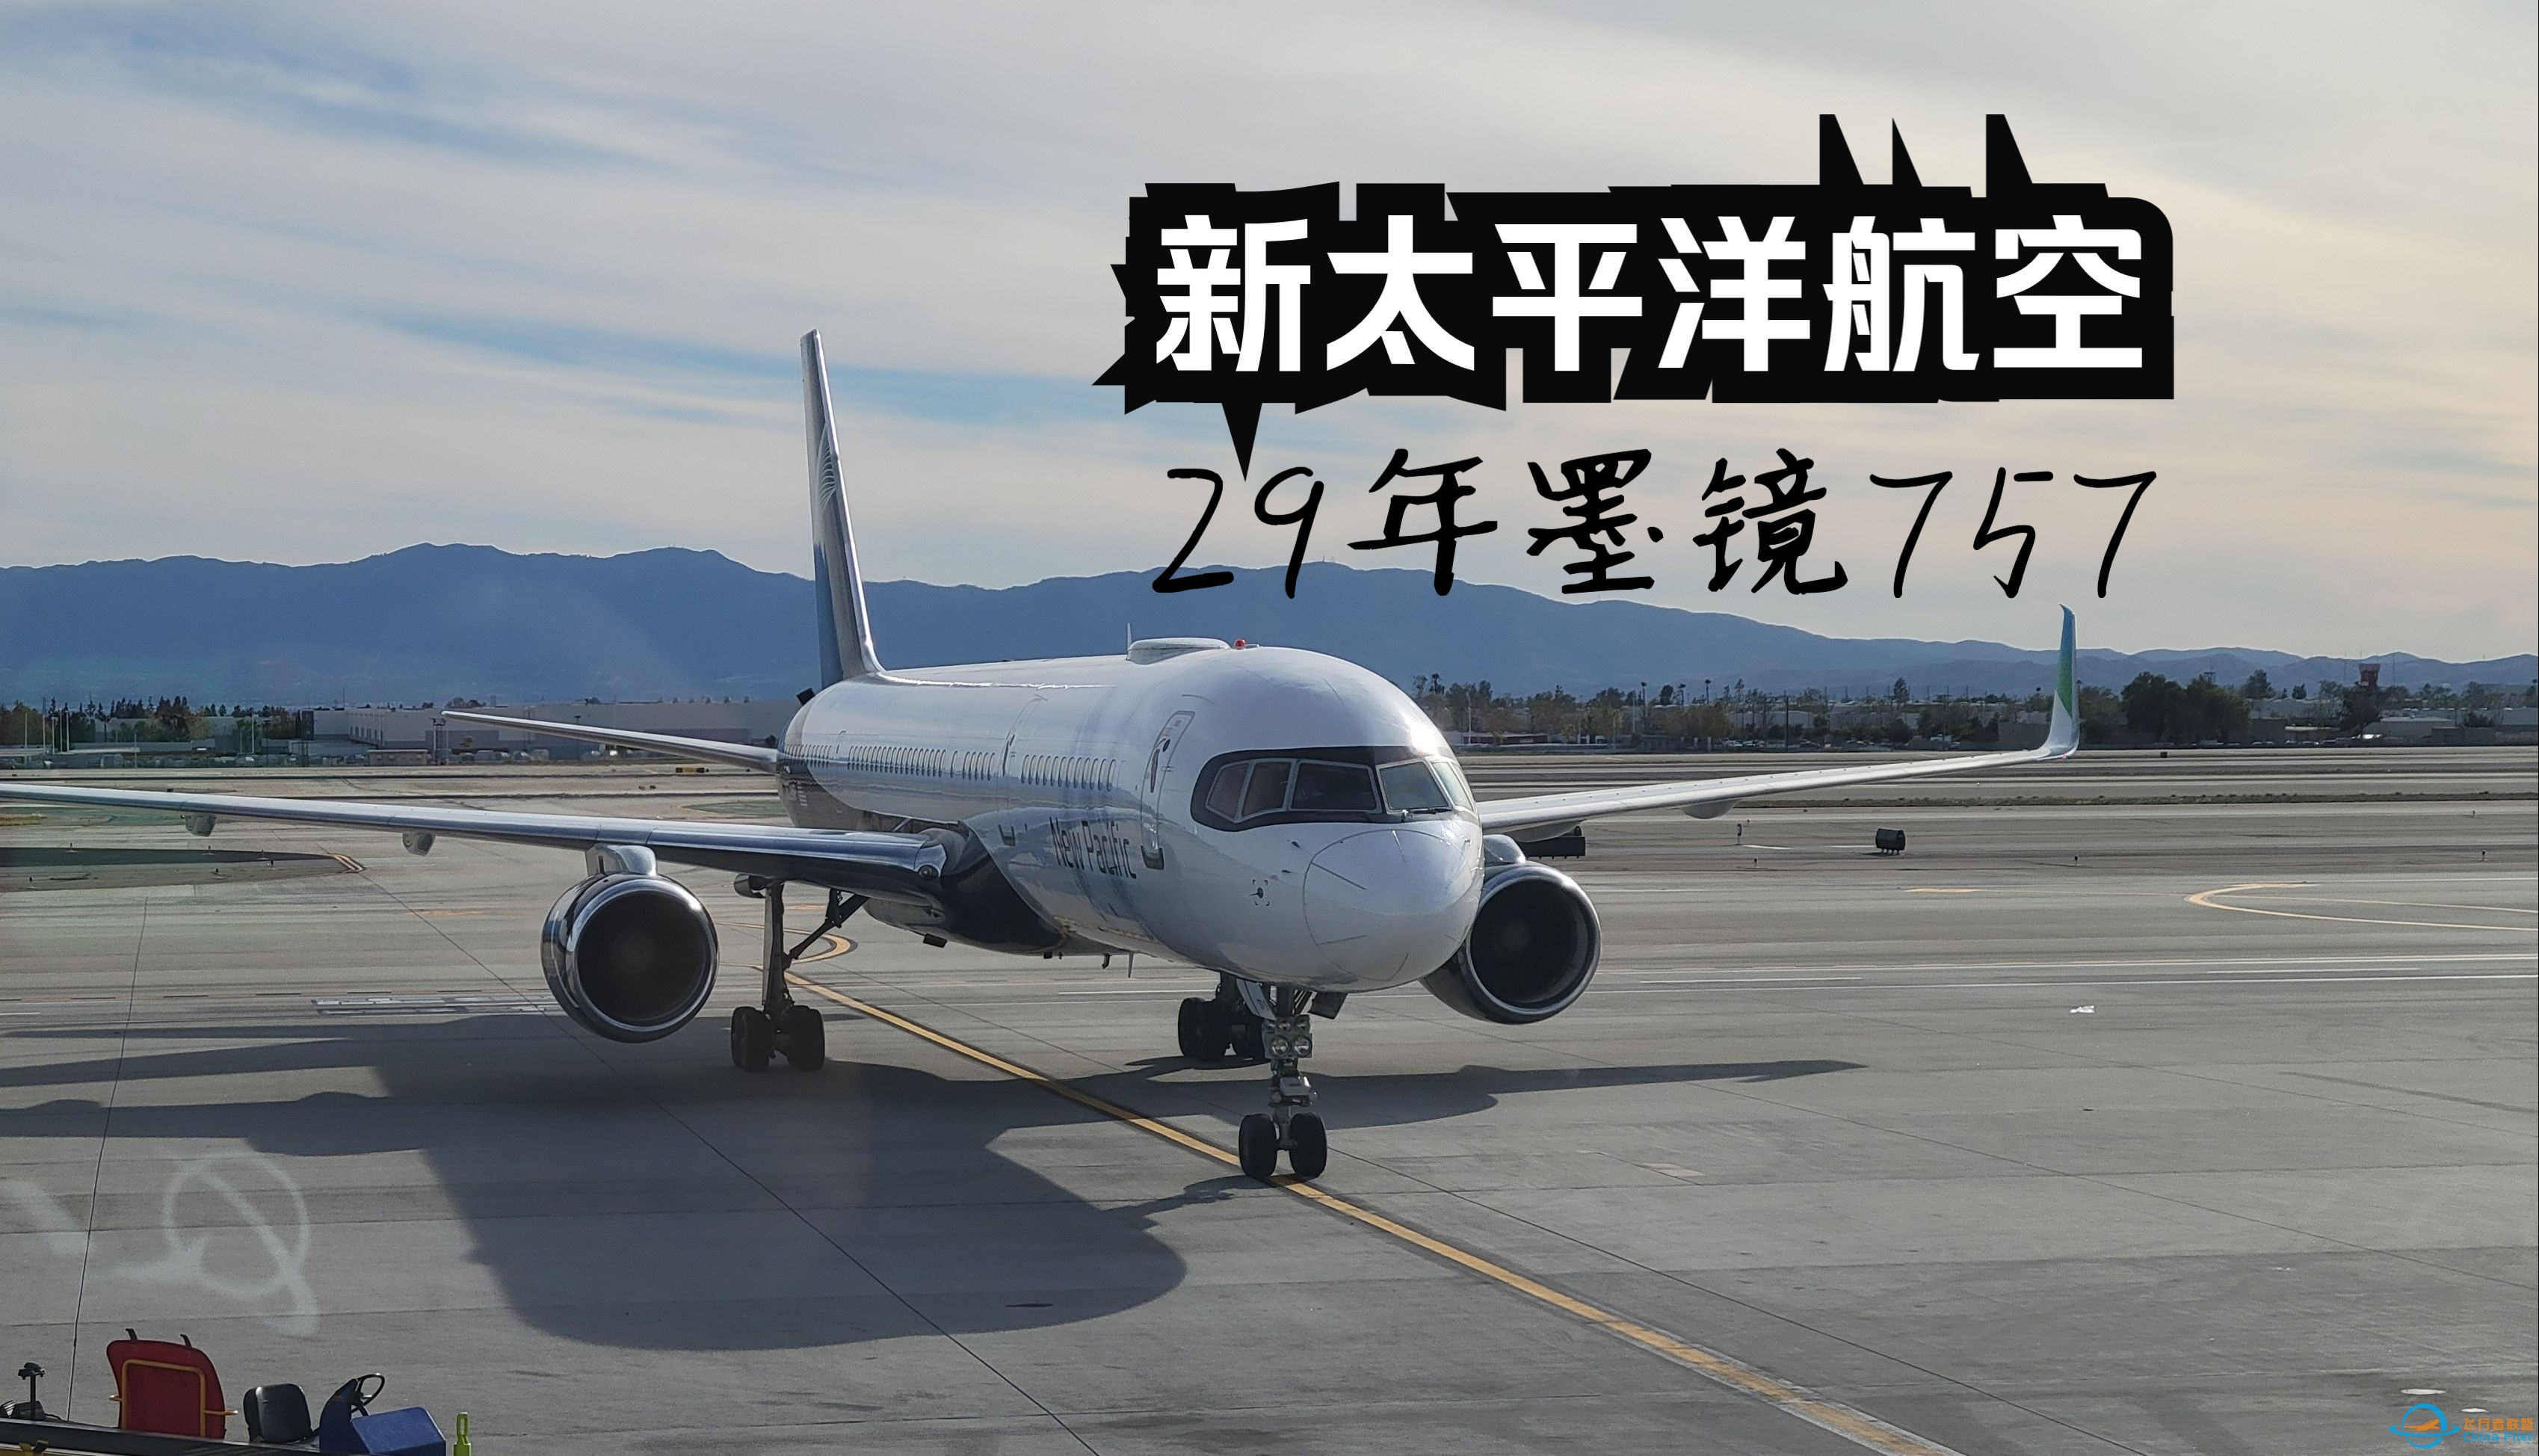 【飞行游记】当全新跨太平洋公司遇上墨镜757？全站首发新太平洋航空波音757超级经济舱体验-577 